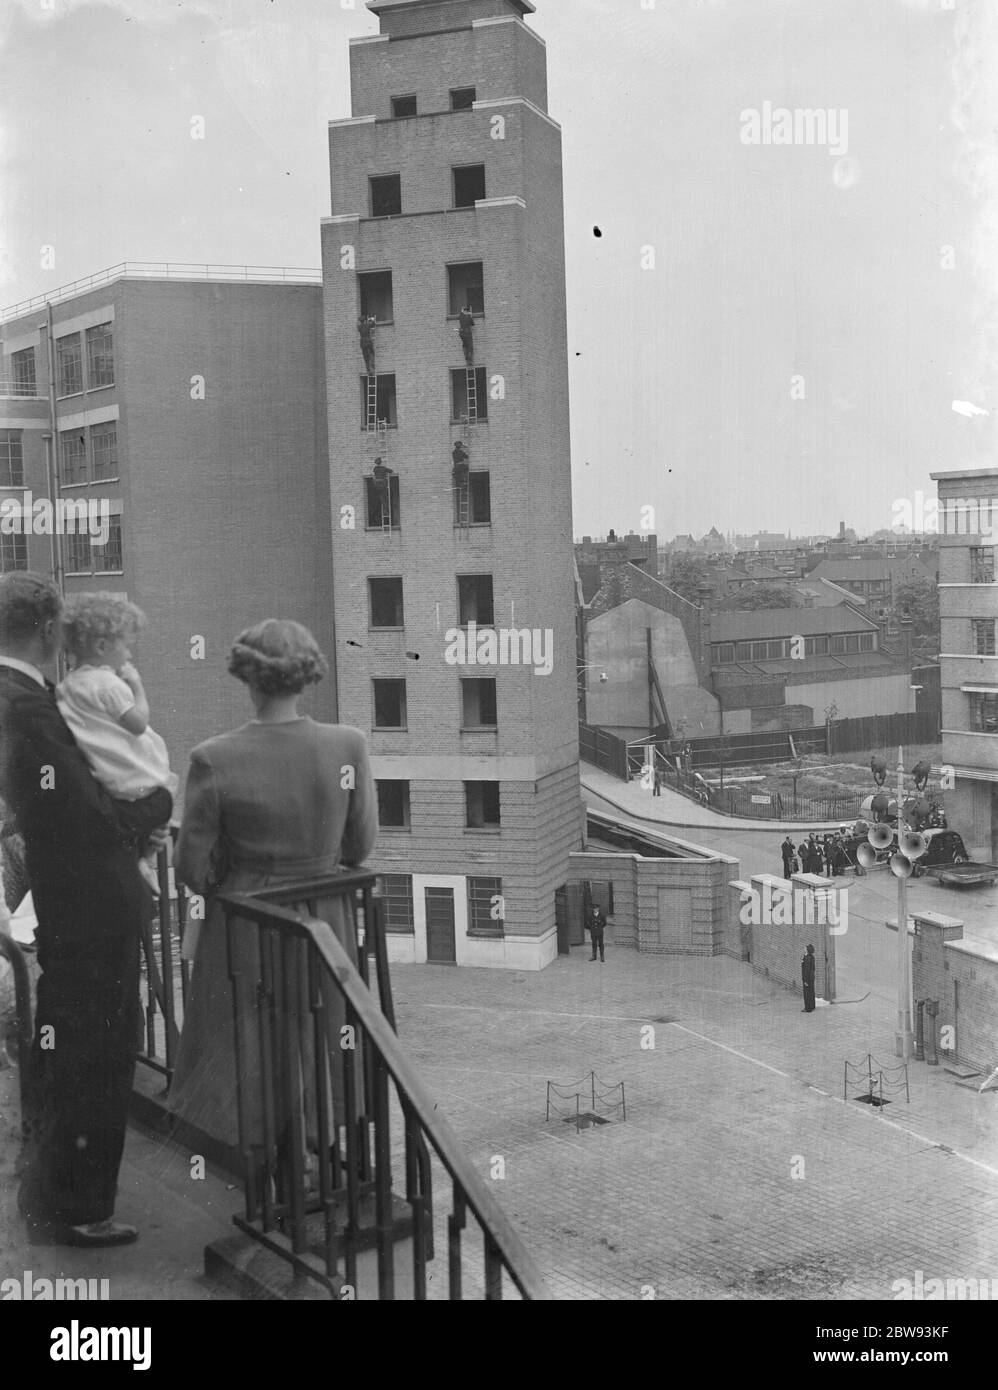 Eine Ausstellung der Londoner Feuerwehr in Lambeth, London. Feuerwehrleute verwenden Hakenleitern, um das hohe Gebäude während der Demonstration zu steigen. 1939 Stockfoto